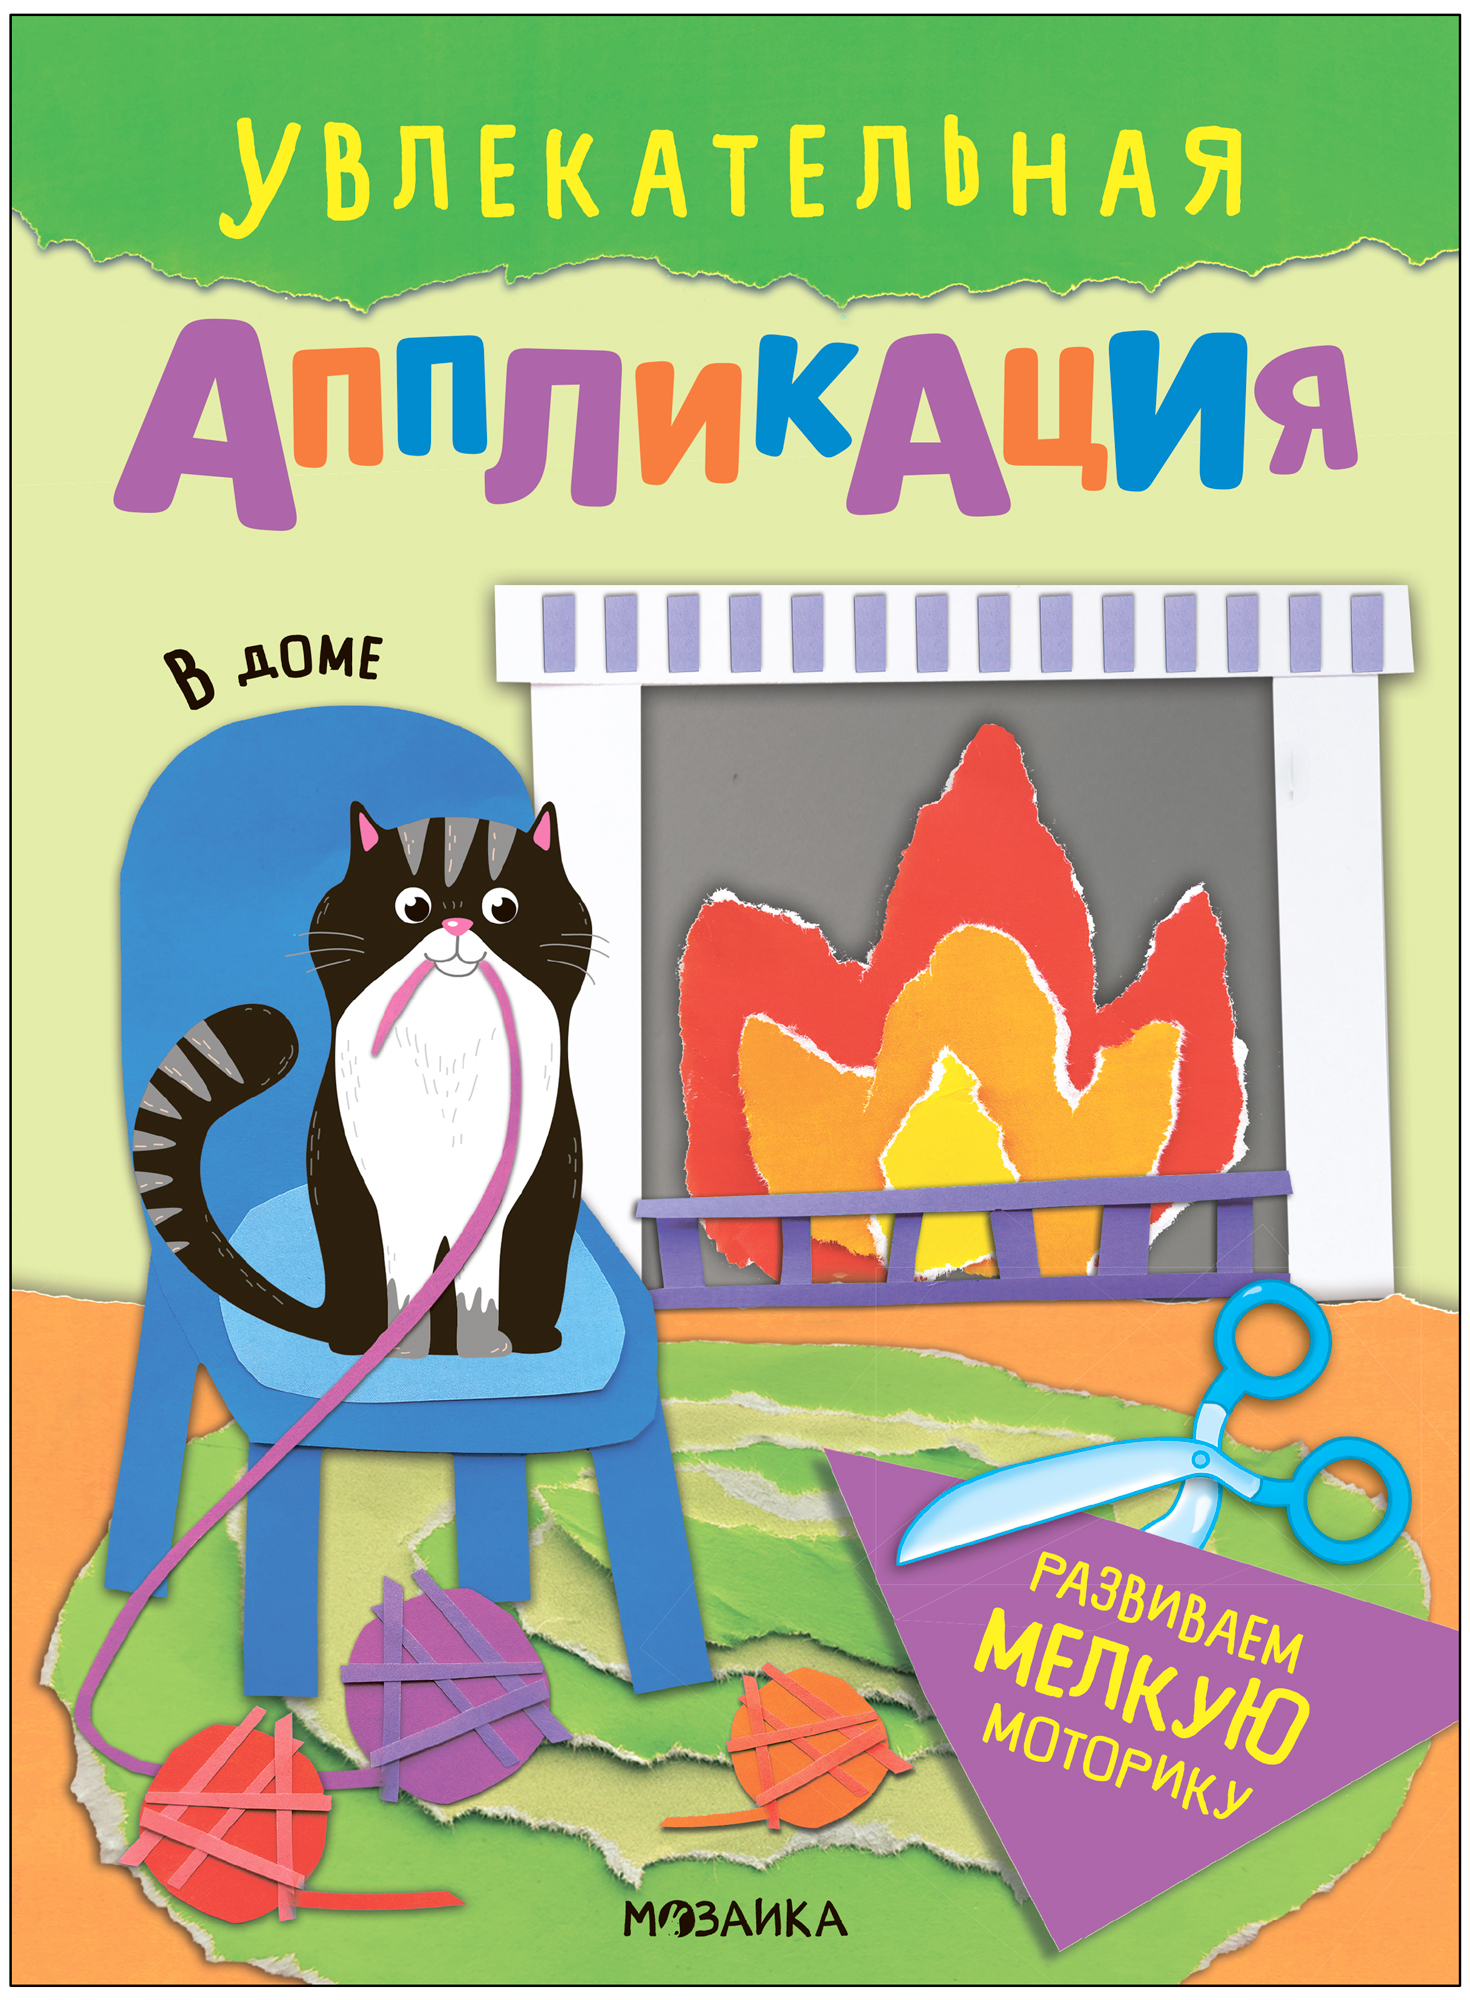 Аппликация книжка МОЗАИКА kids Увлекательная В доме для творчества